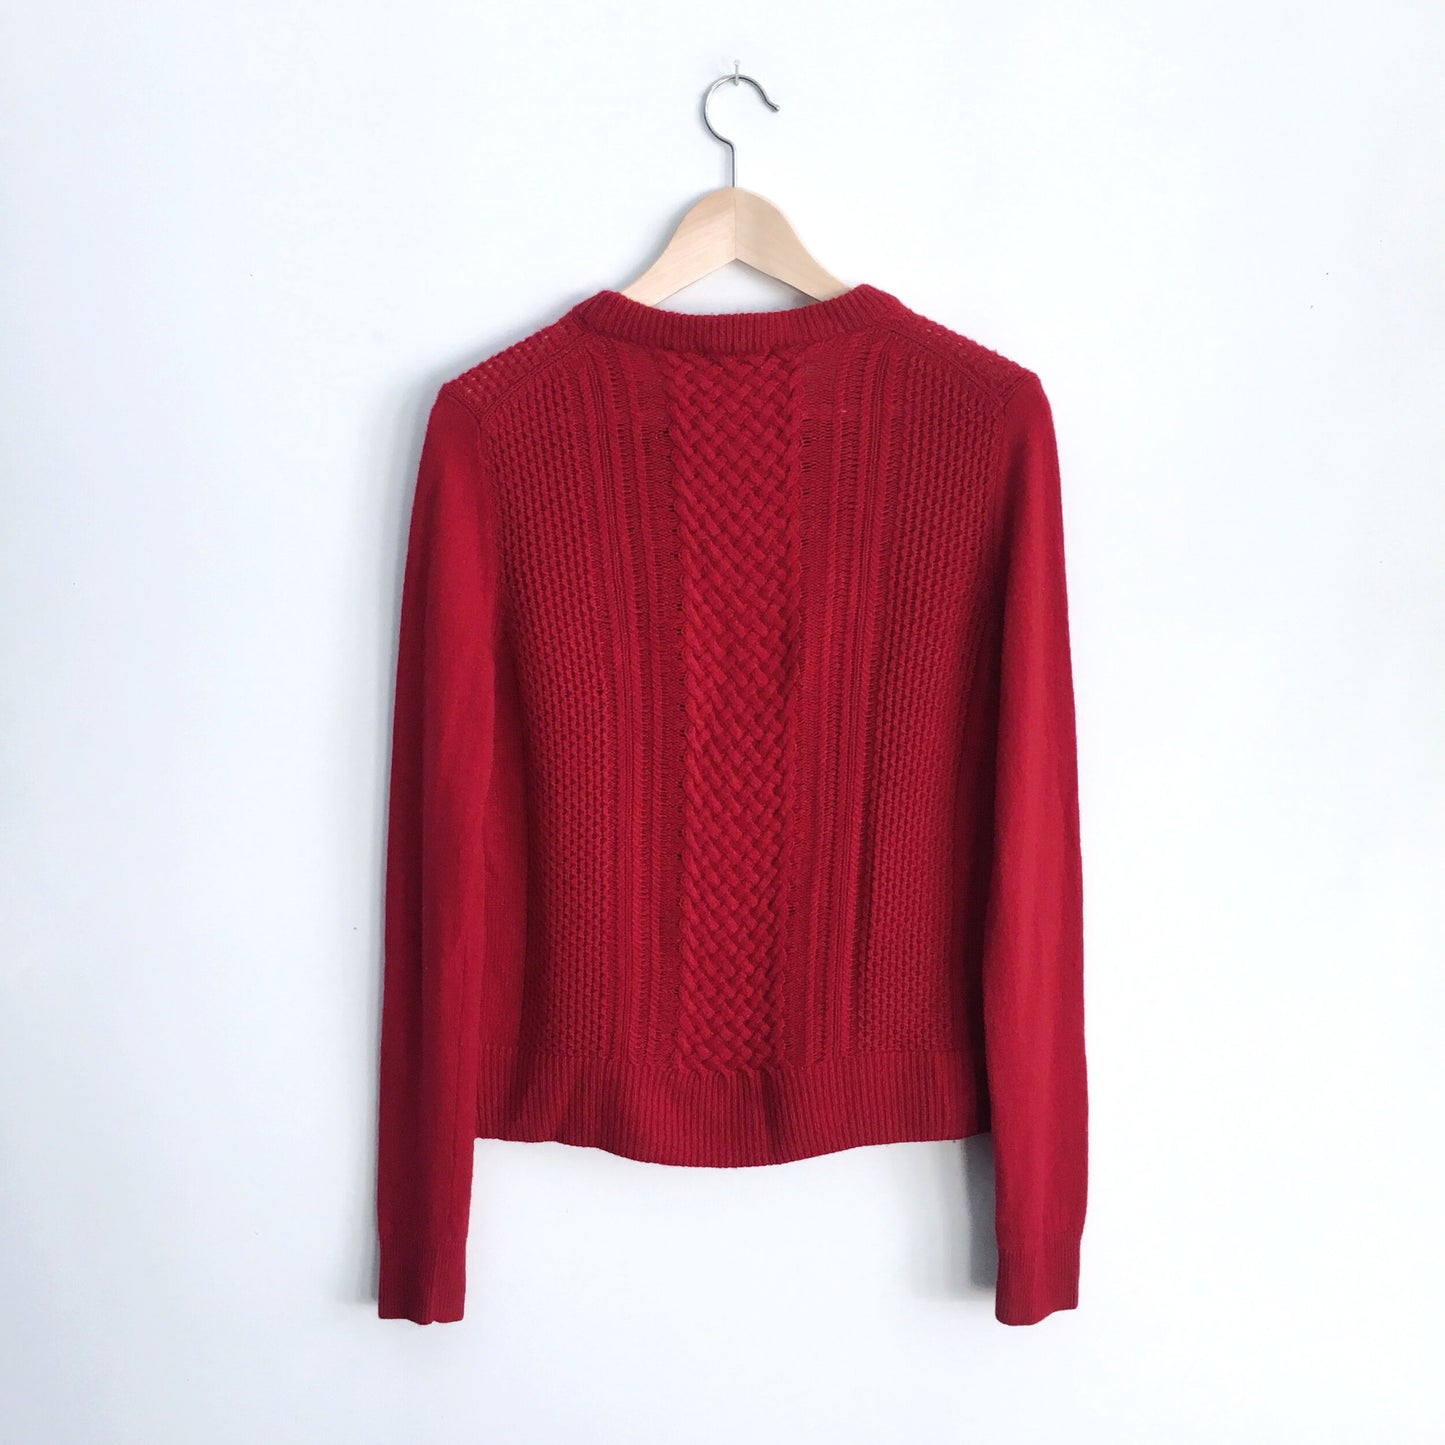 T. Babaton Cashmere Sweater - size Medium